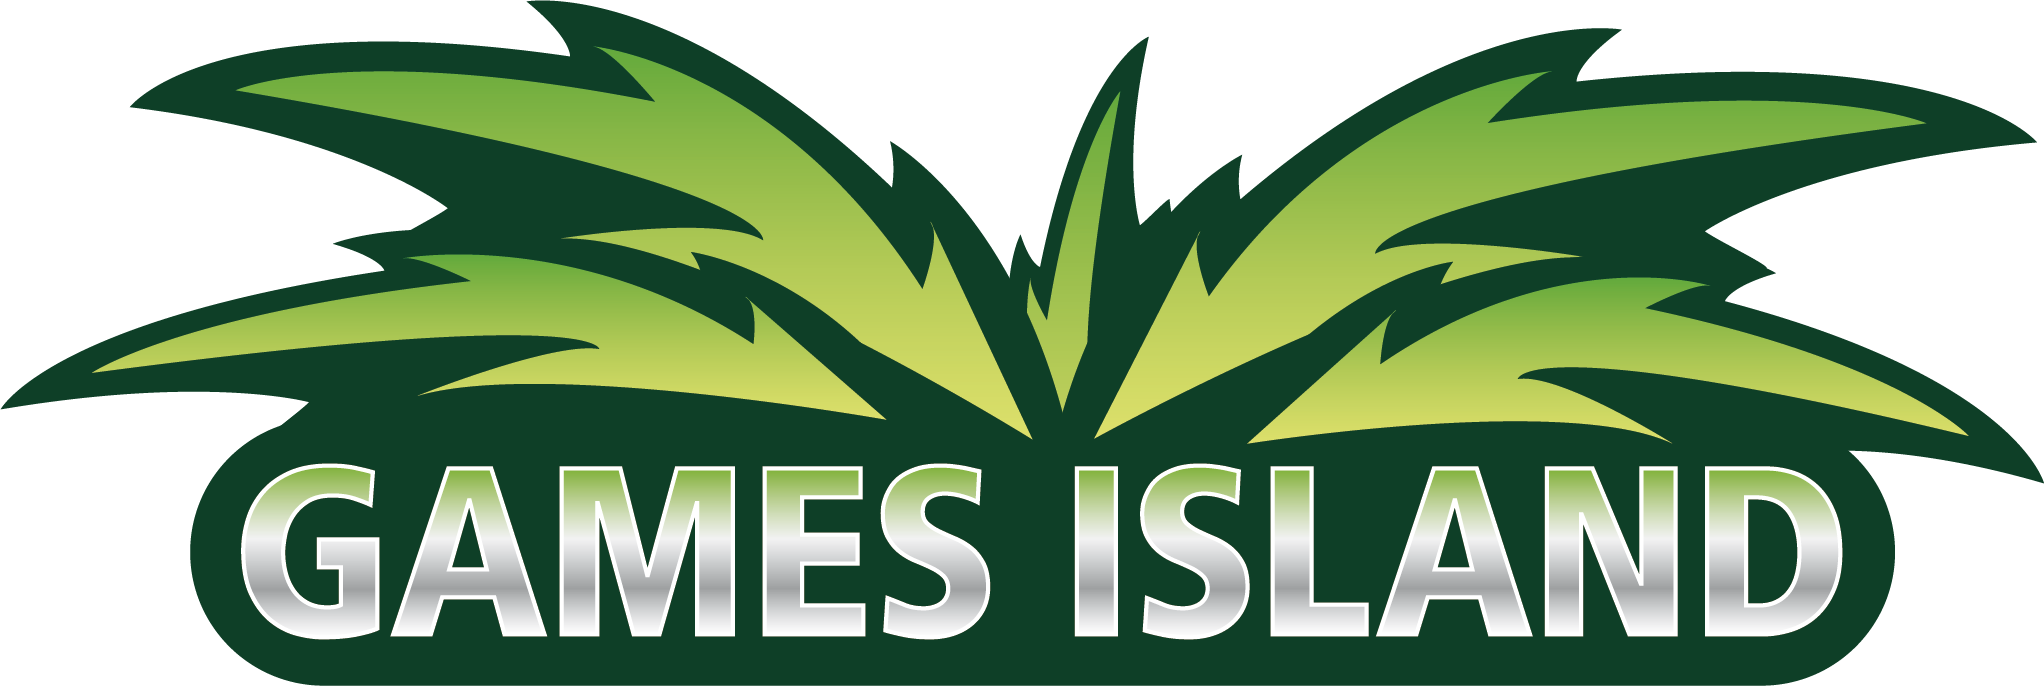 games-island-logo-transparent